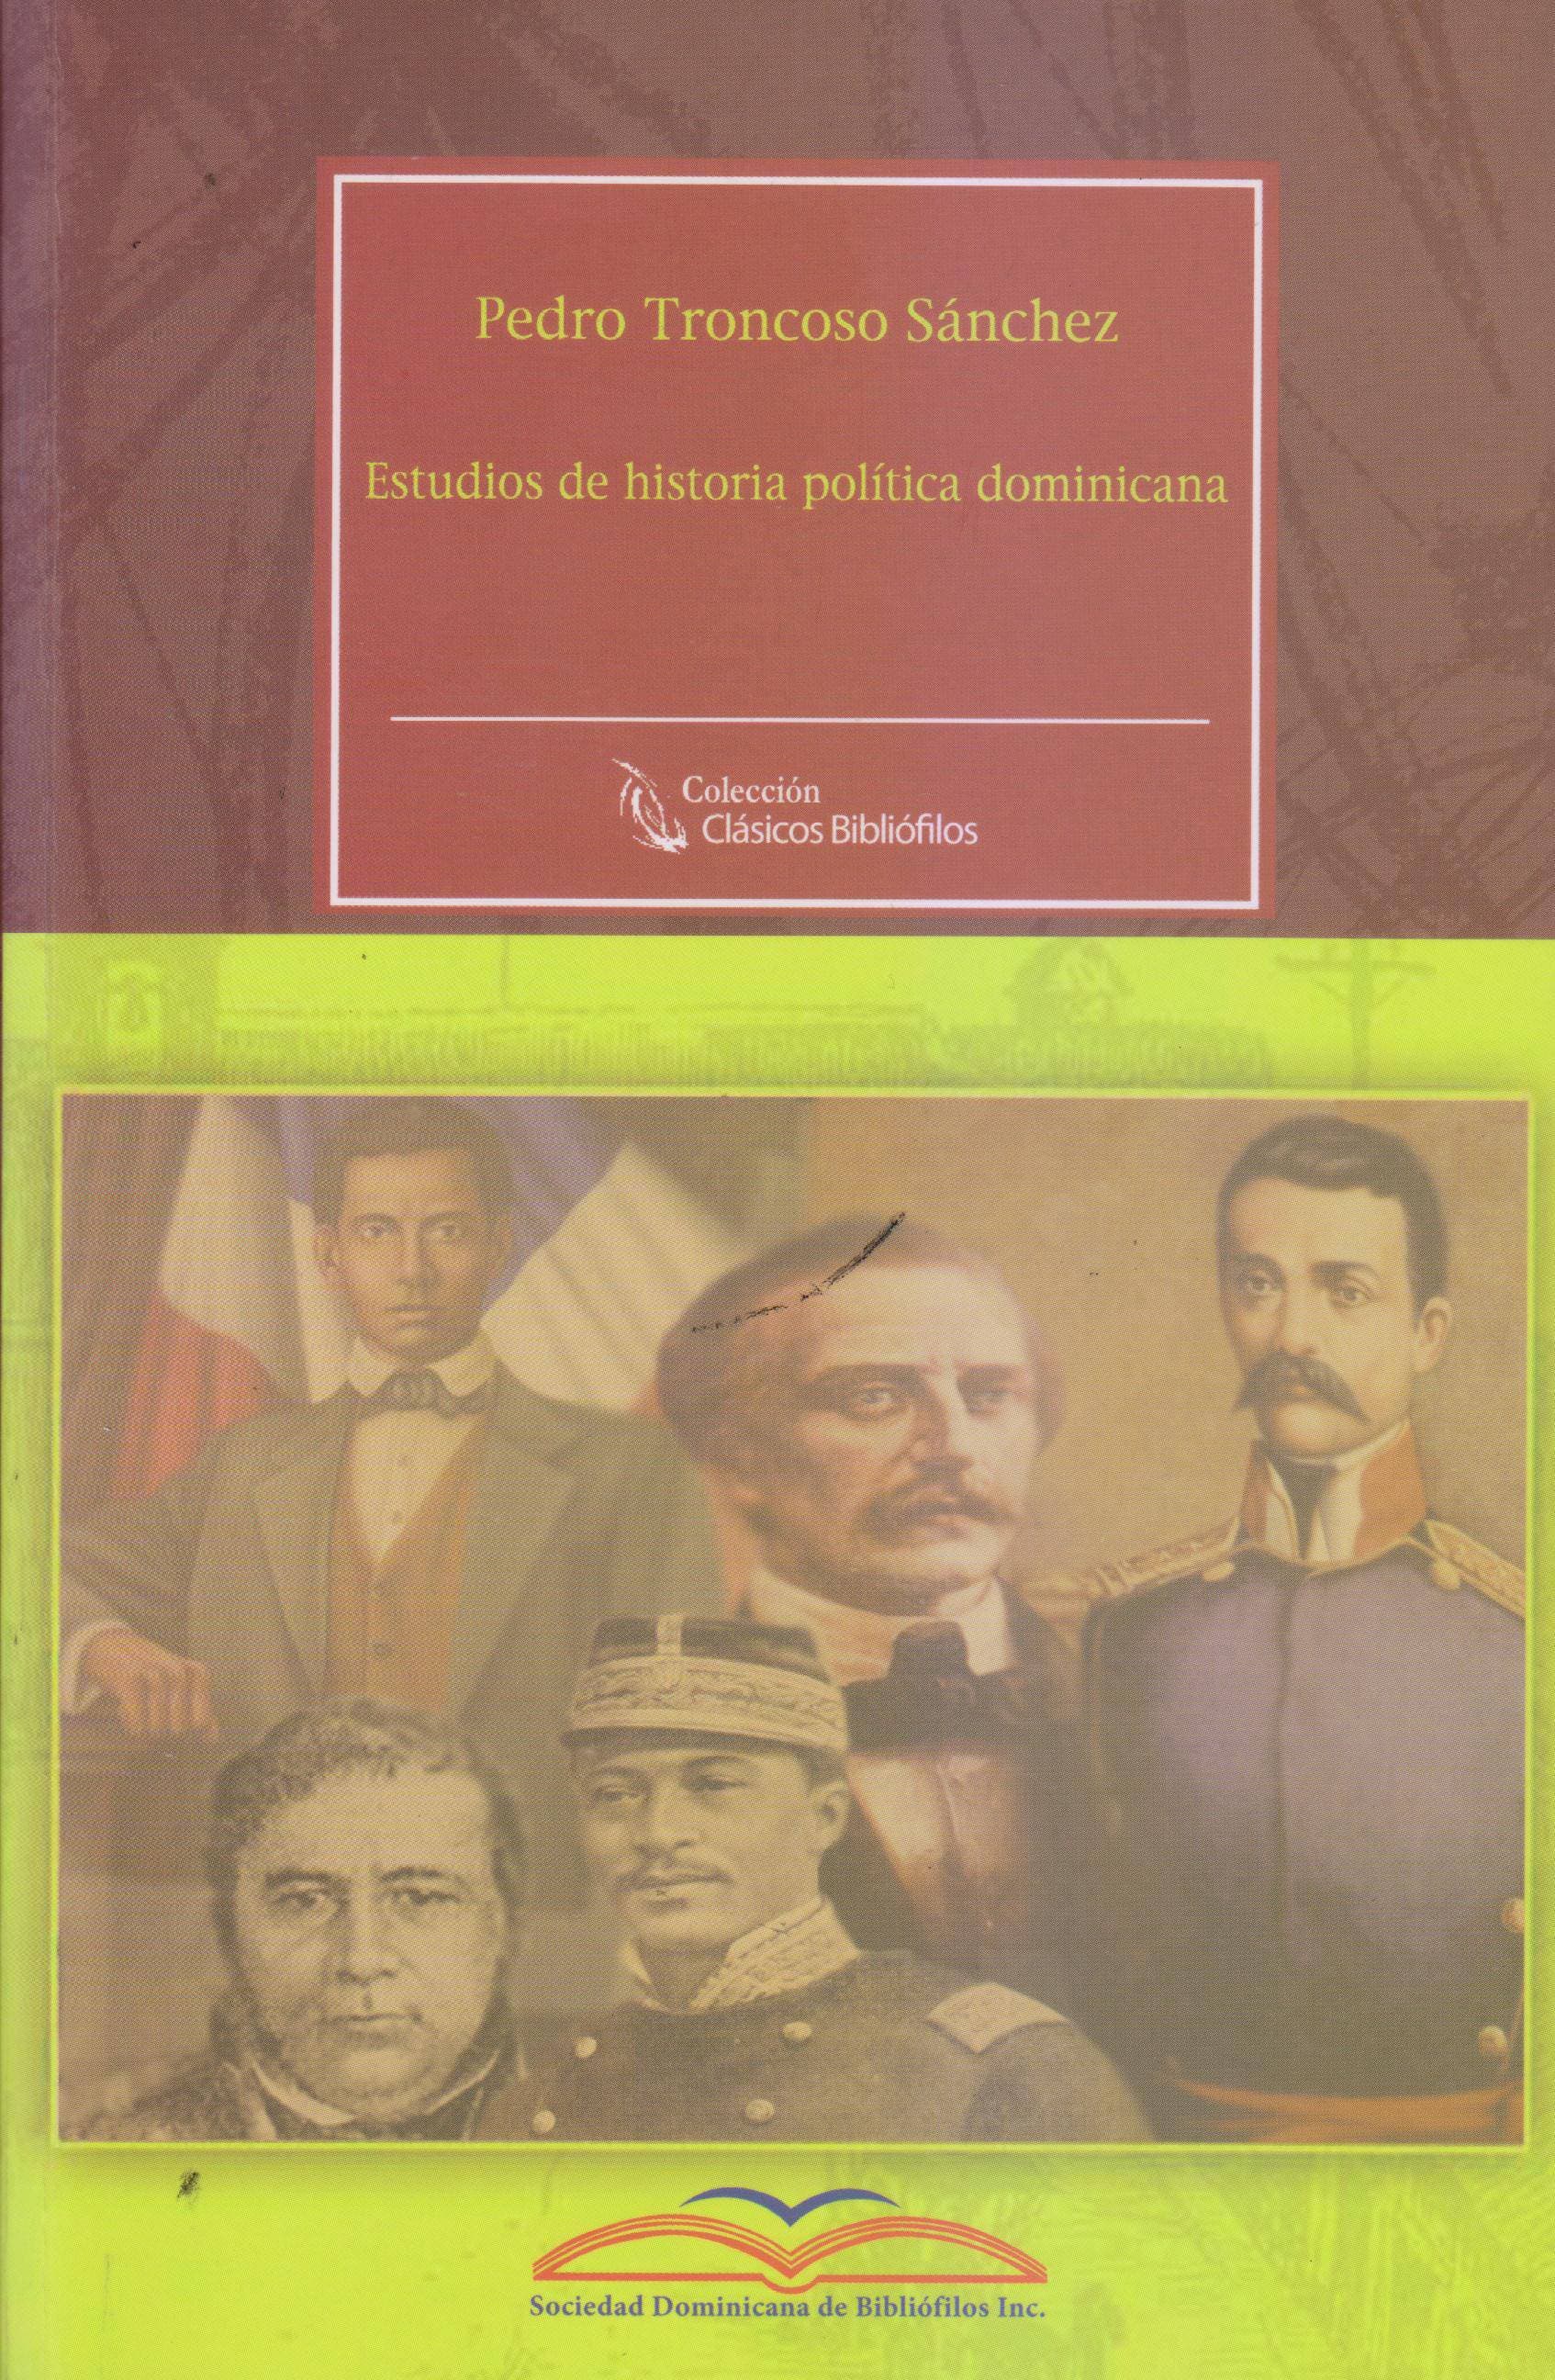 Bibliófilos publican libro historia política de Pedro Troncoso Sánchez‏